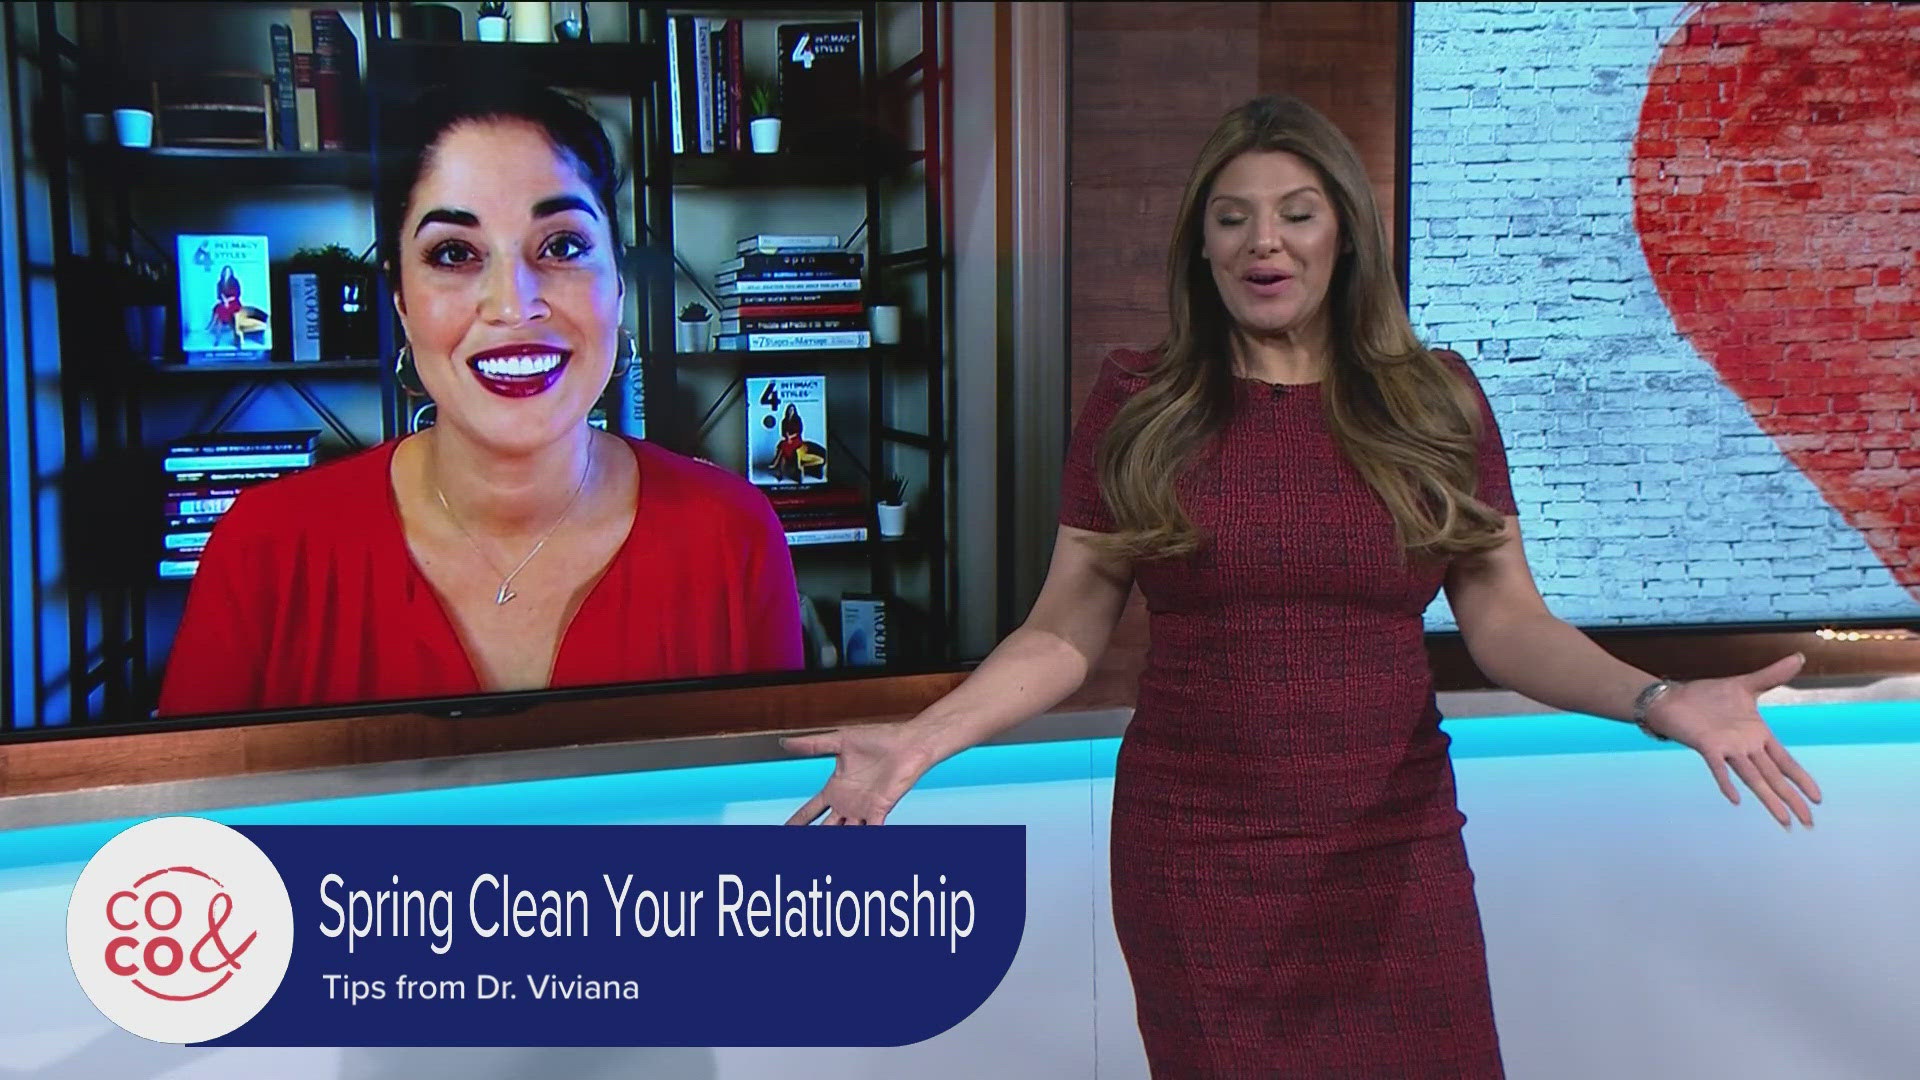 Get a copy of Dr. Viviana's book at DoctorViviana.com. Code: COCO gets you 20% off! Send any relationship questions for Dr. Viviana to MyCOCO@9News.com.